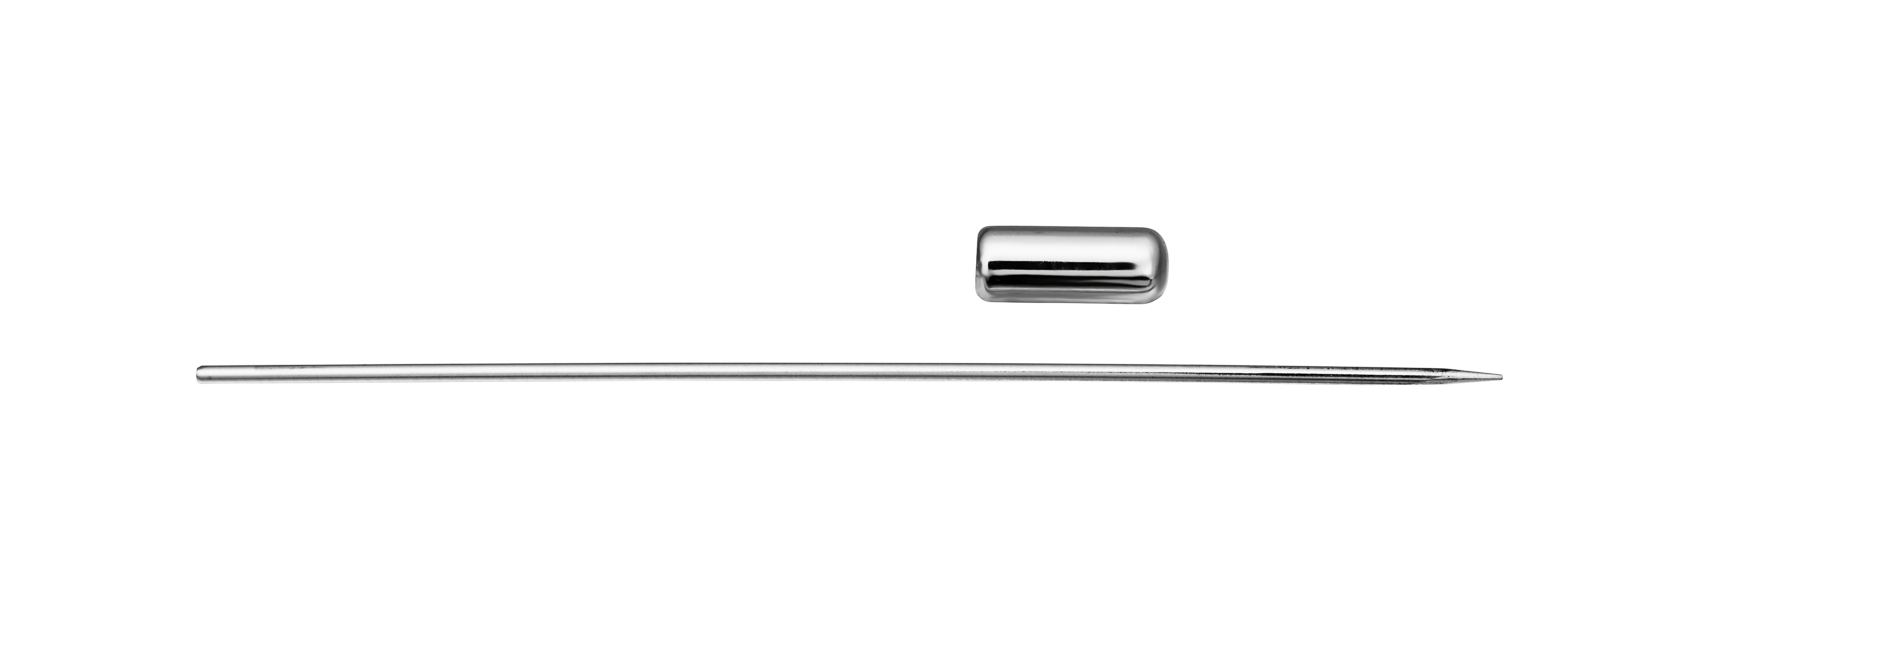 Ref.: 42421 - Pincho Long. 70 mm - Hilo 1 mm Ø - Tapón 10 x 4 mm